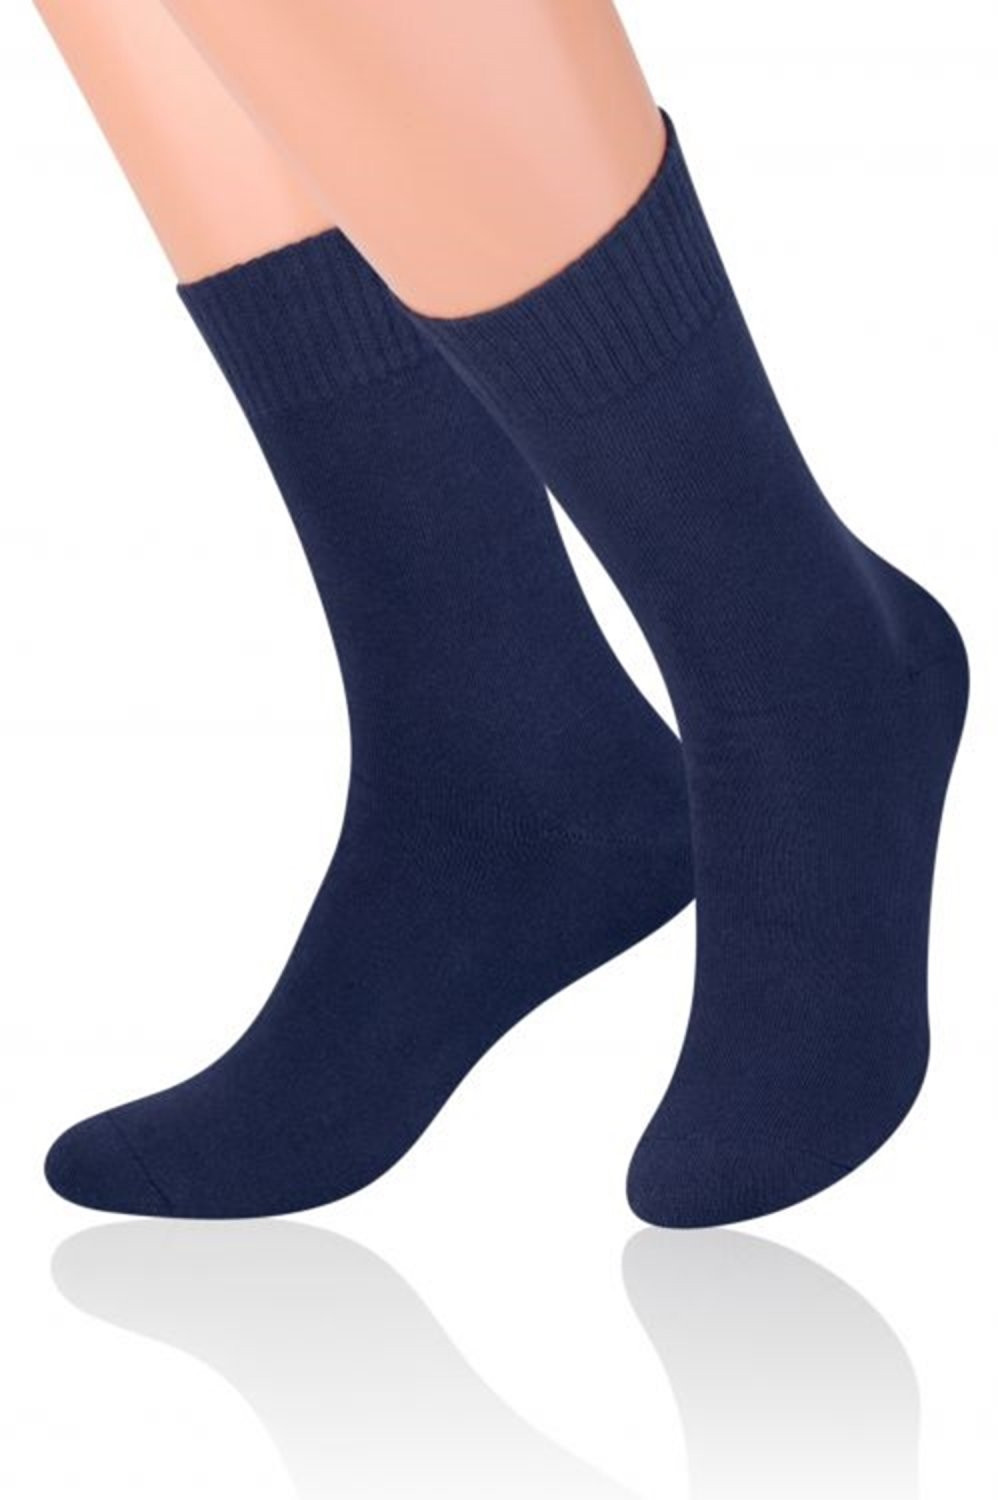 Pánské ponožky 015 Frotte dark blue - Steven tmavě modrá 41/43